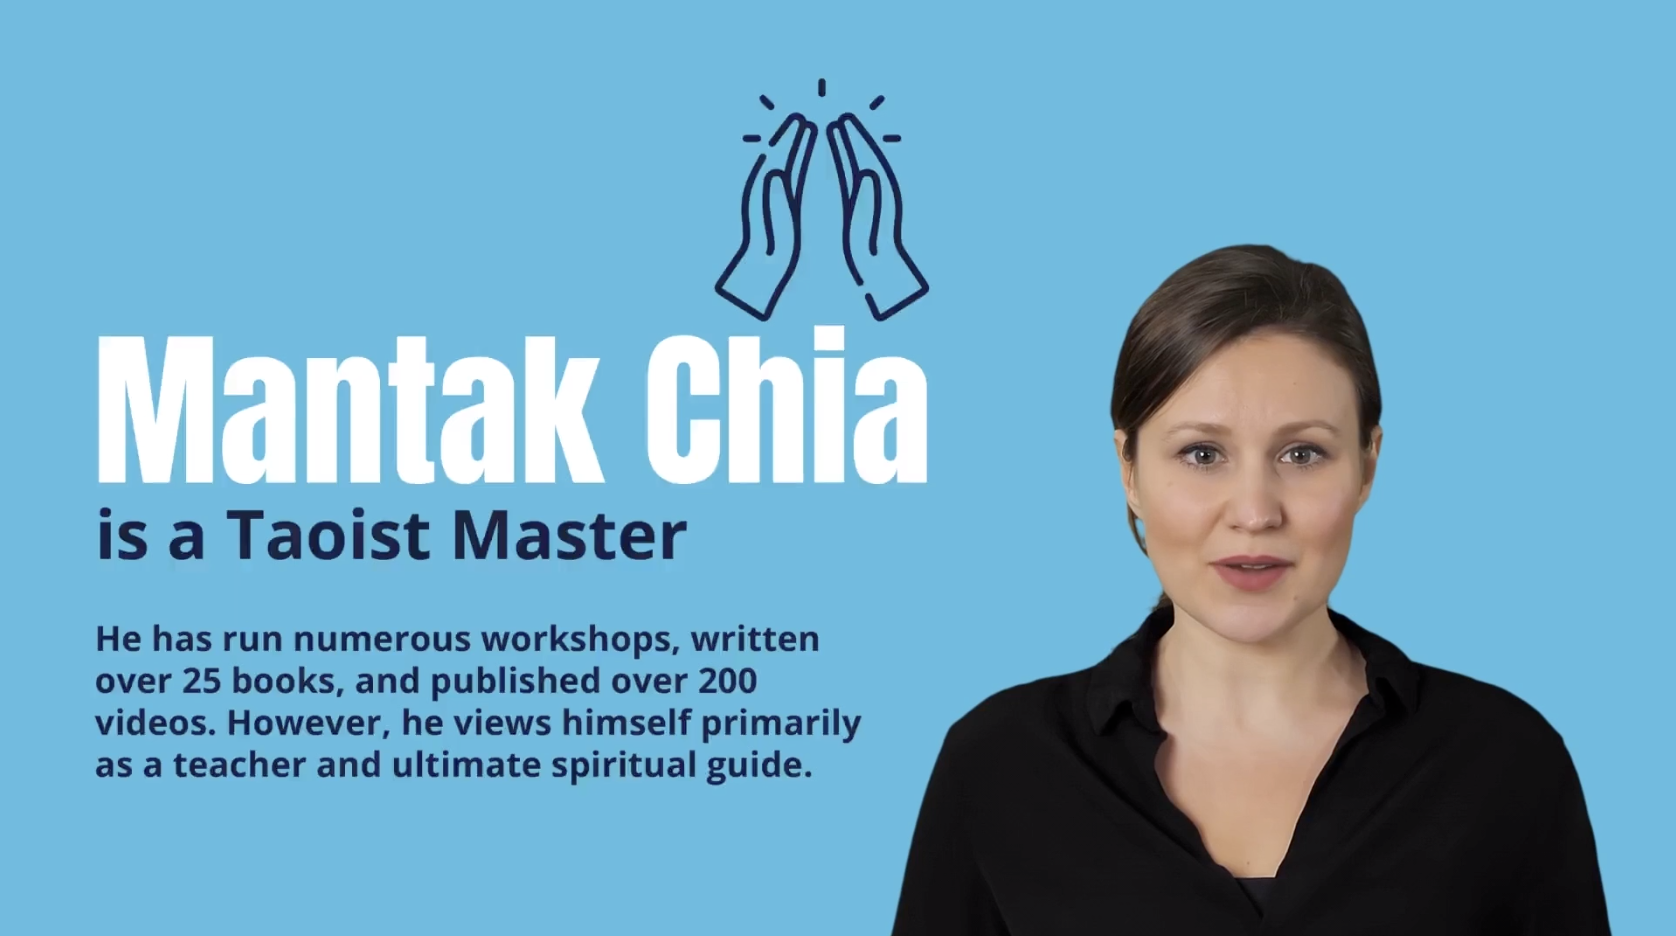 The rise of Mantak Chia